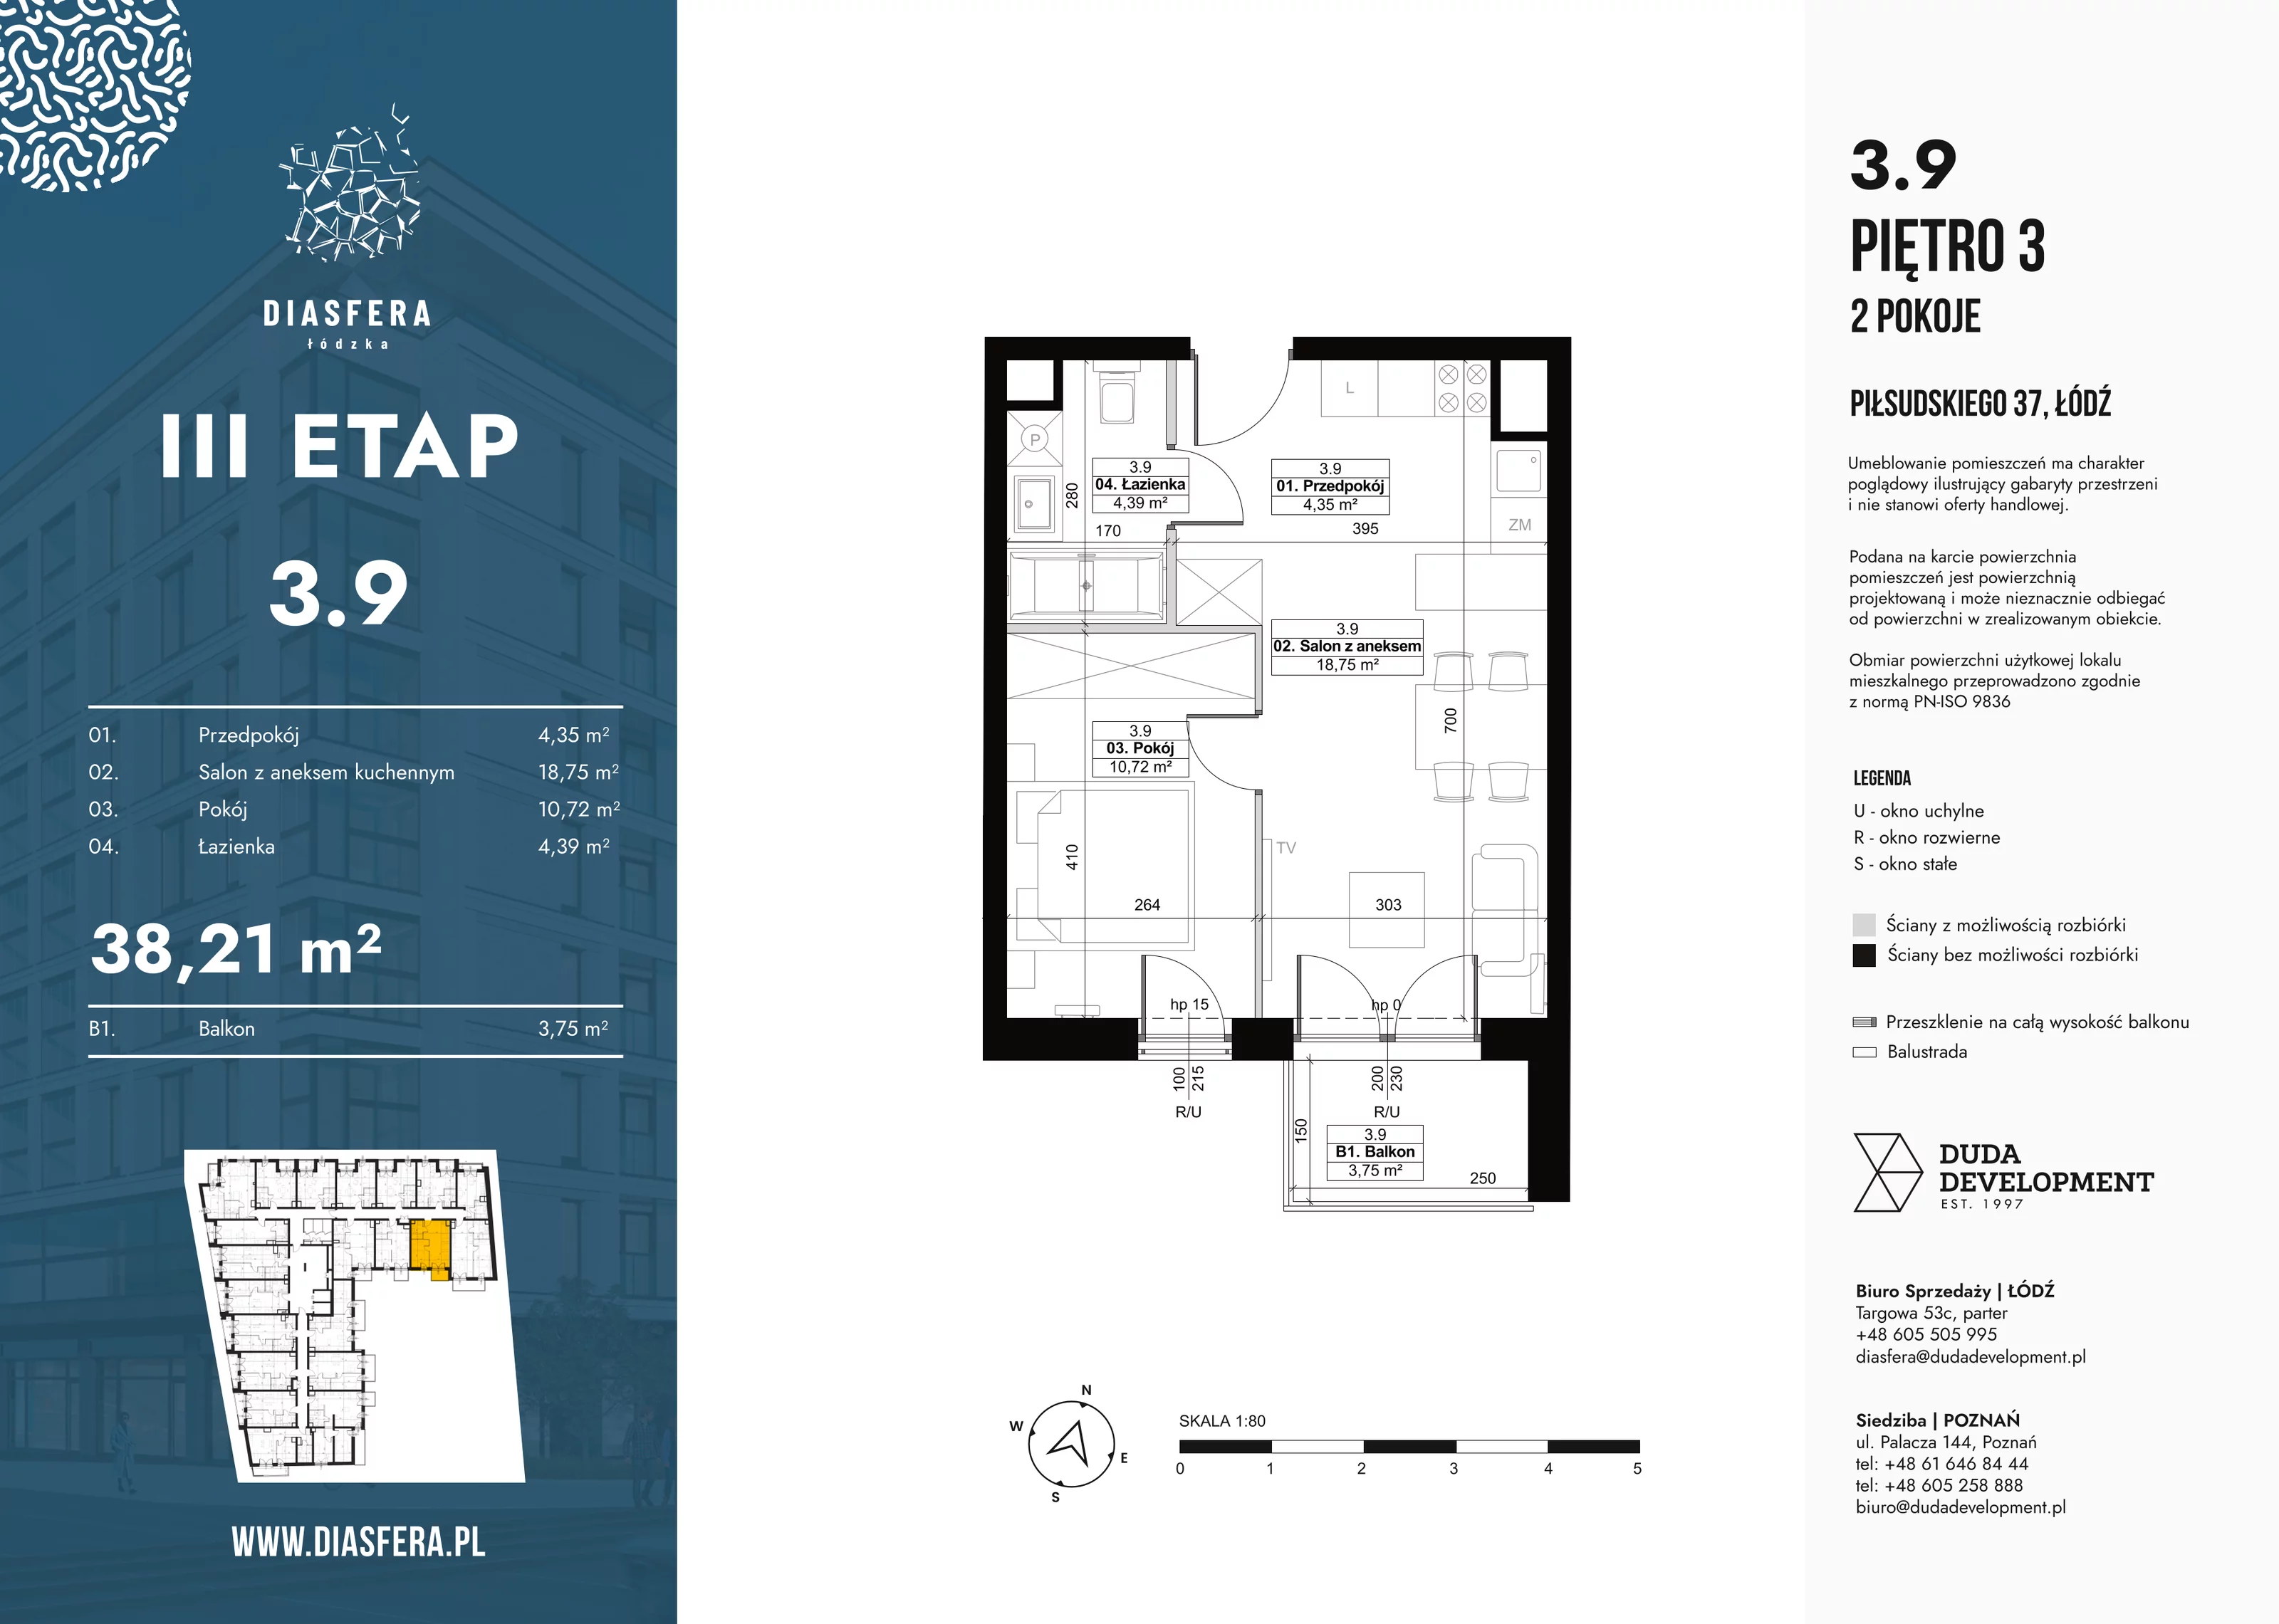 Mieszkanie 38,21 m², piętro 3, oferta nr 3_9, Diasfera III, Łódź, Śródmieście, al. Piłsudskiego 37